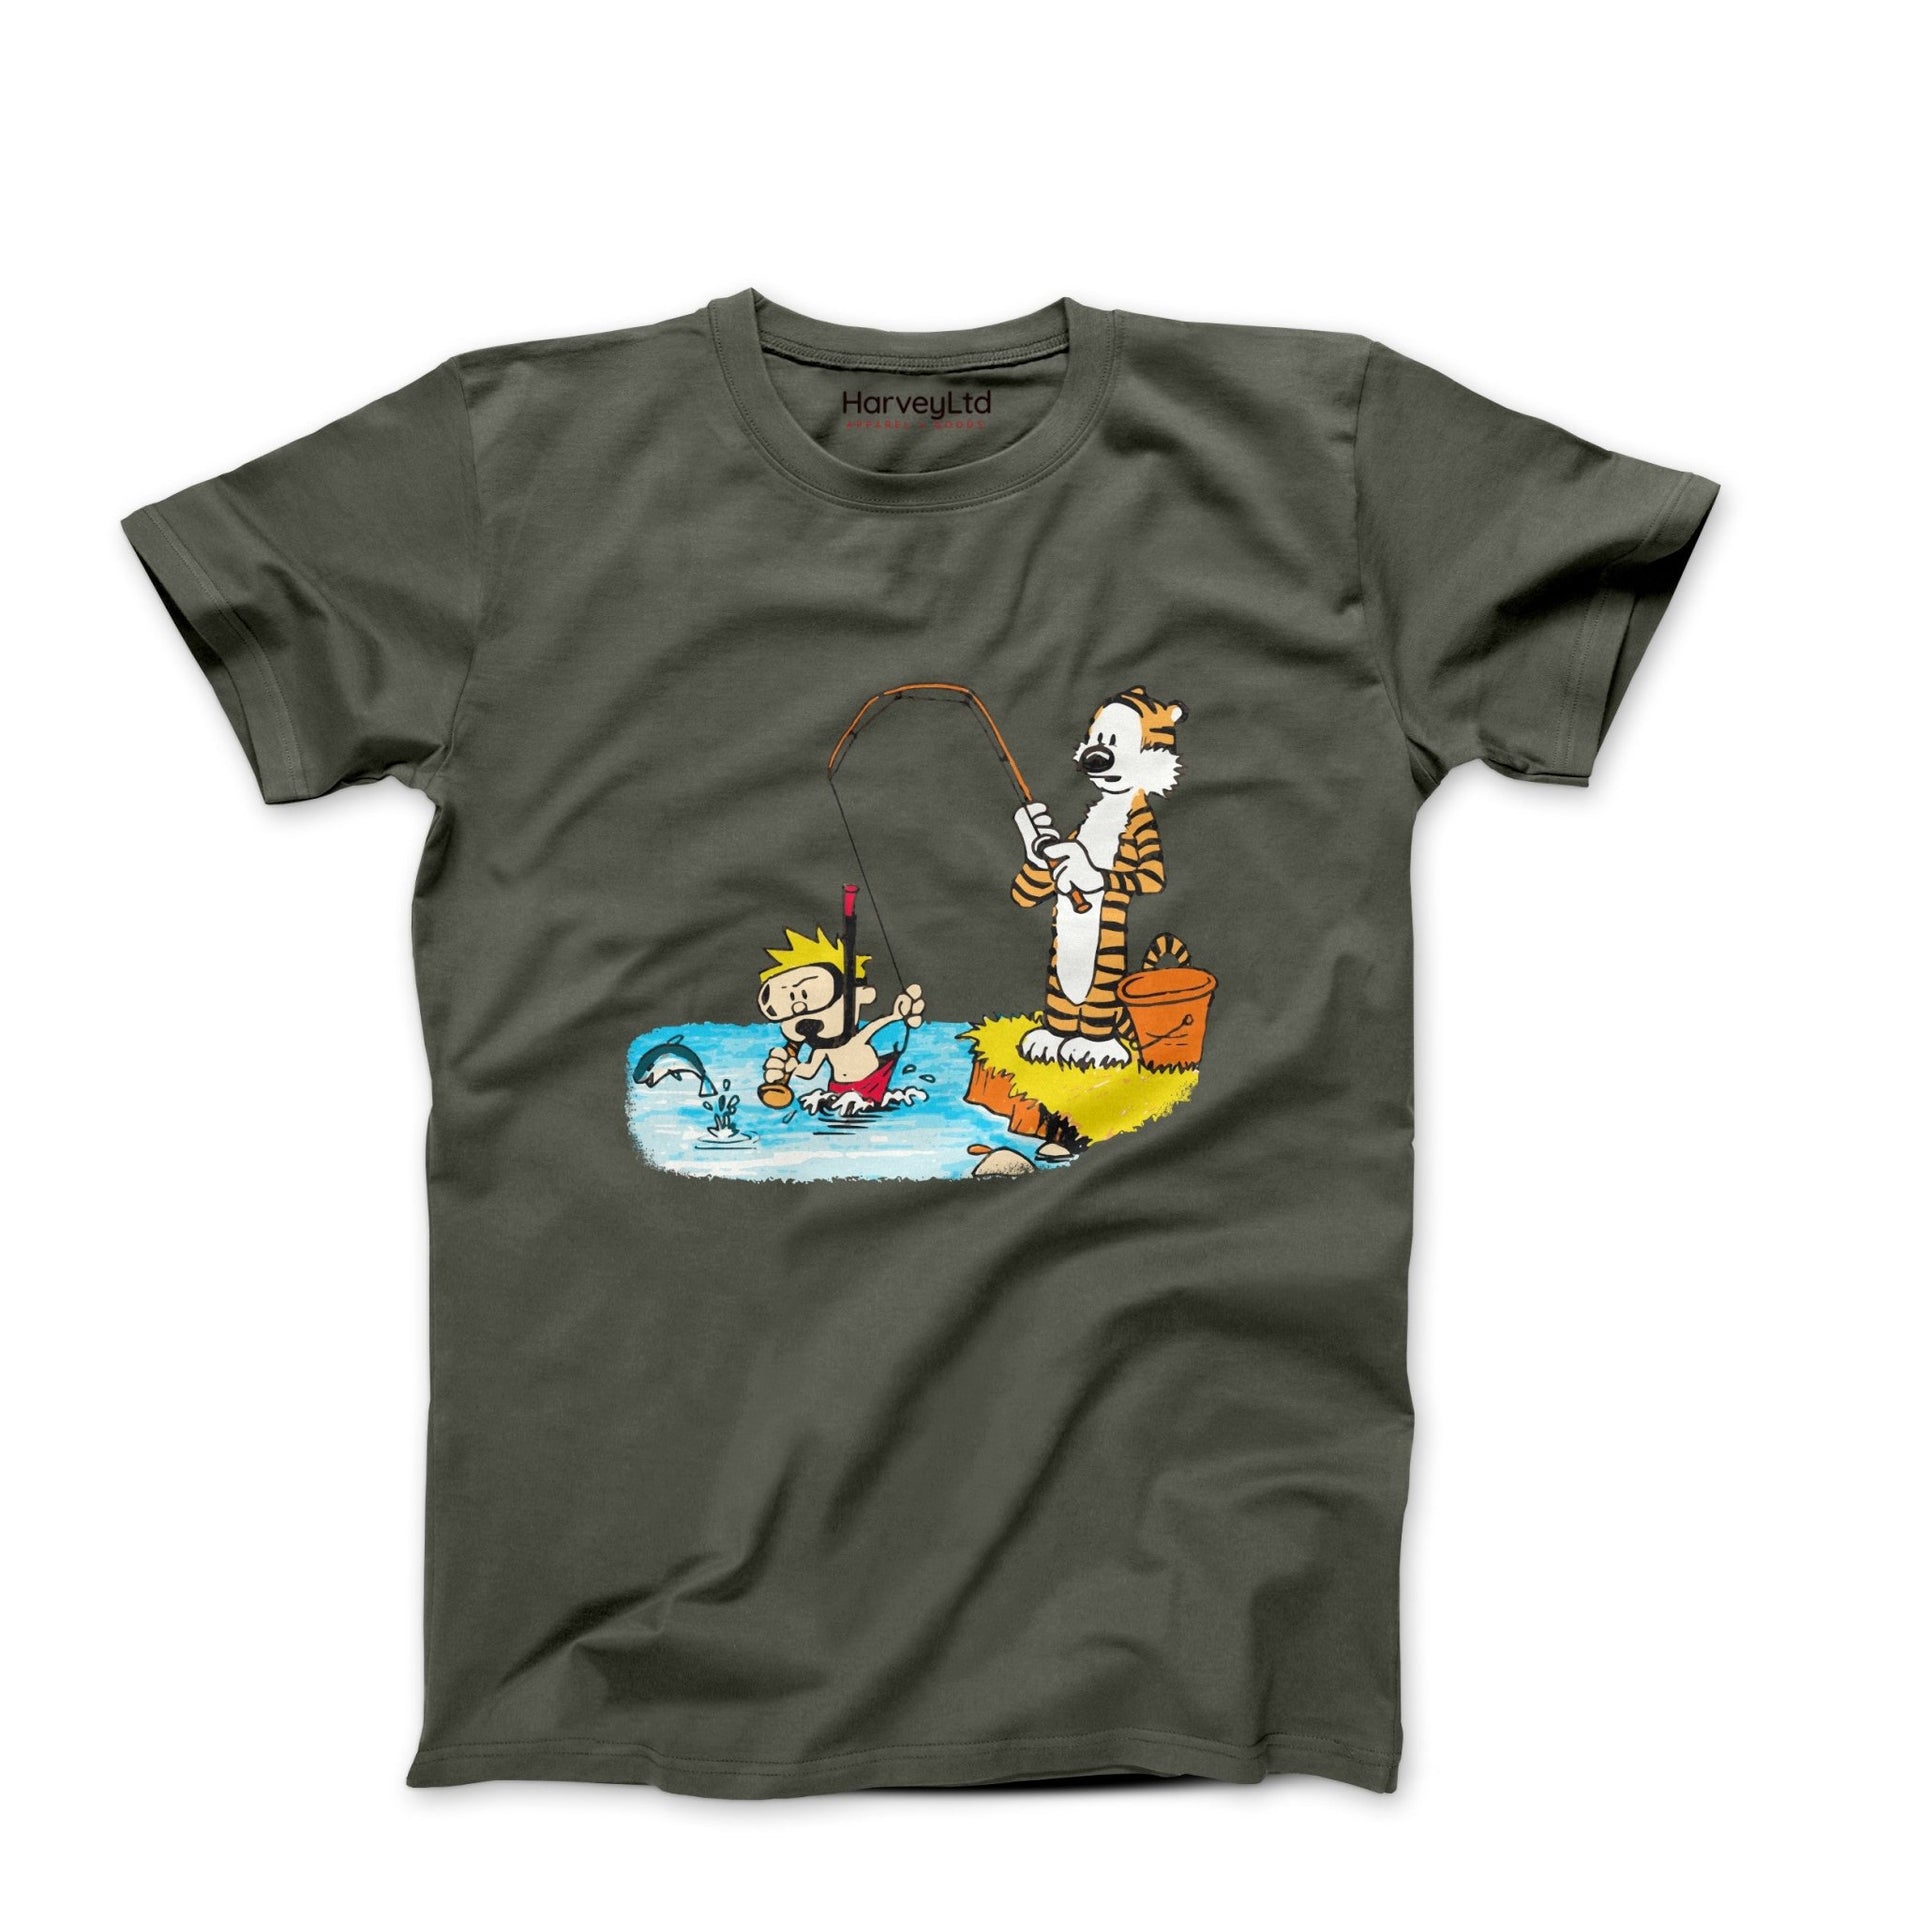 Calvin & Hobbes Gone Fishing Illustration T-shirt - Clothing - Harvey Ltd